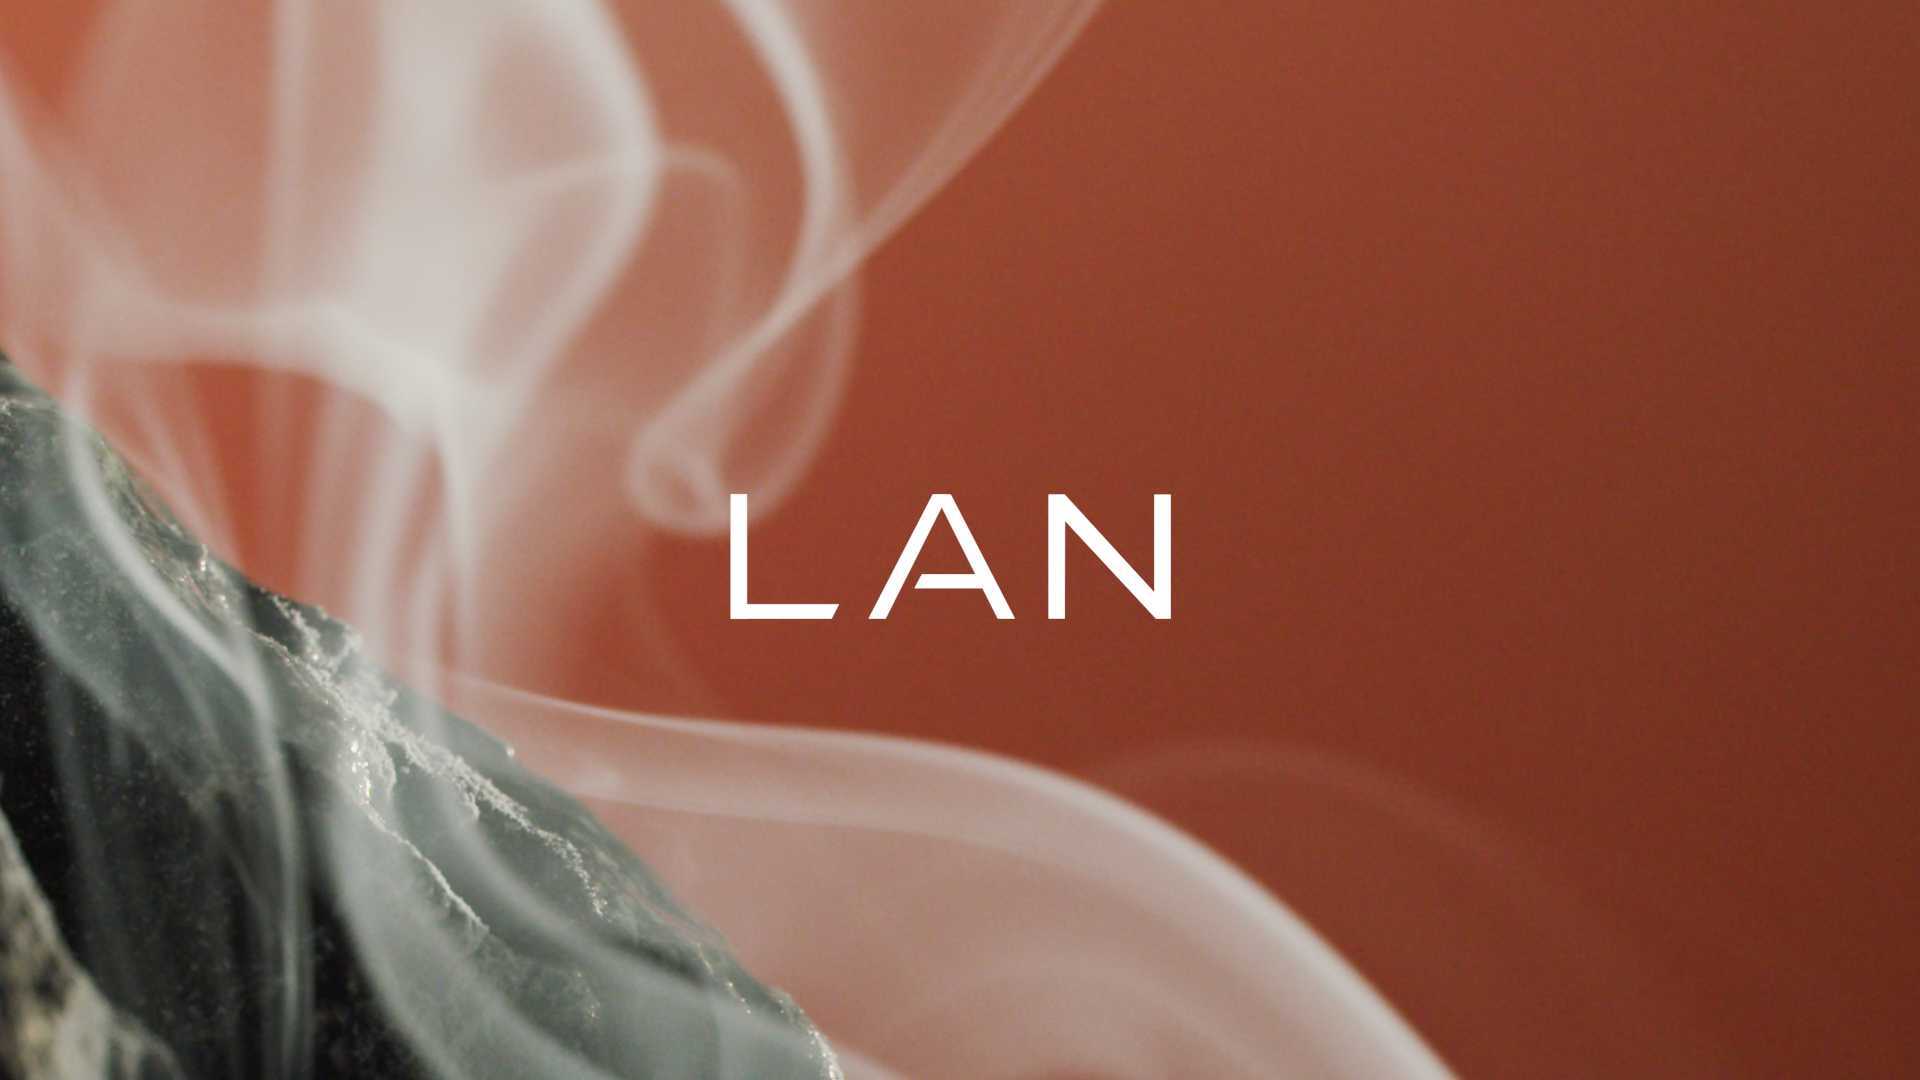 LAN X 游雯迪 | 《风从龙》限定礼盒